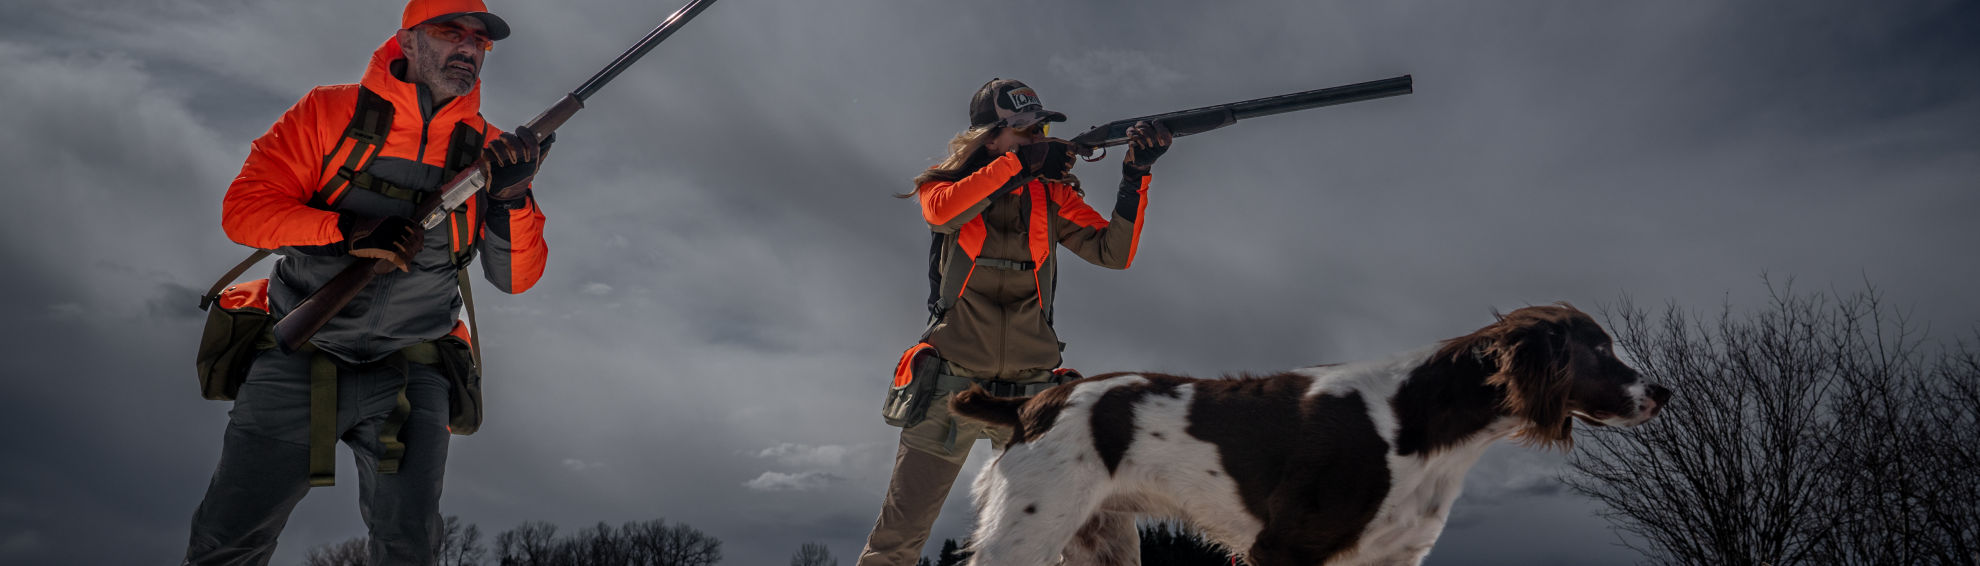 Two hunters aim their shotguns under a cloudy sky